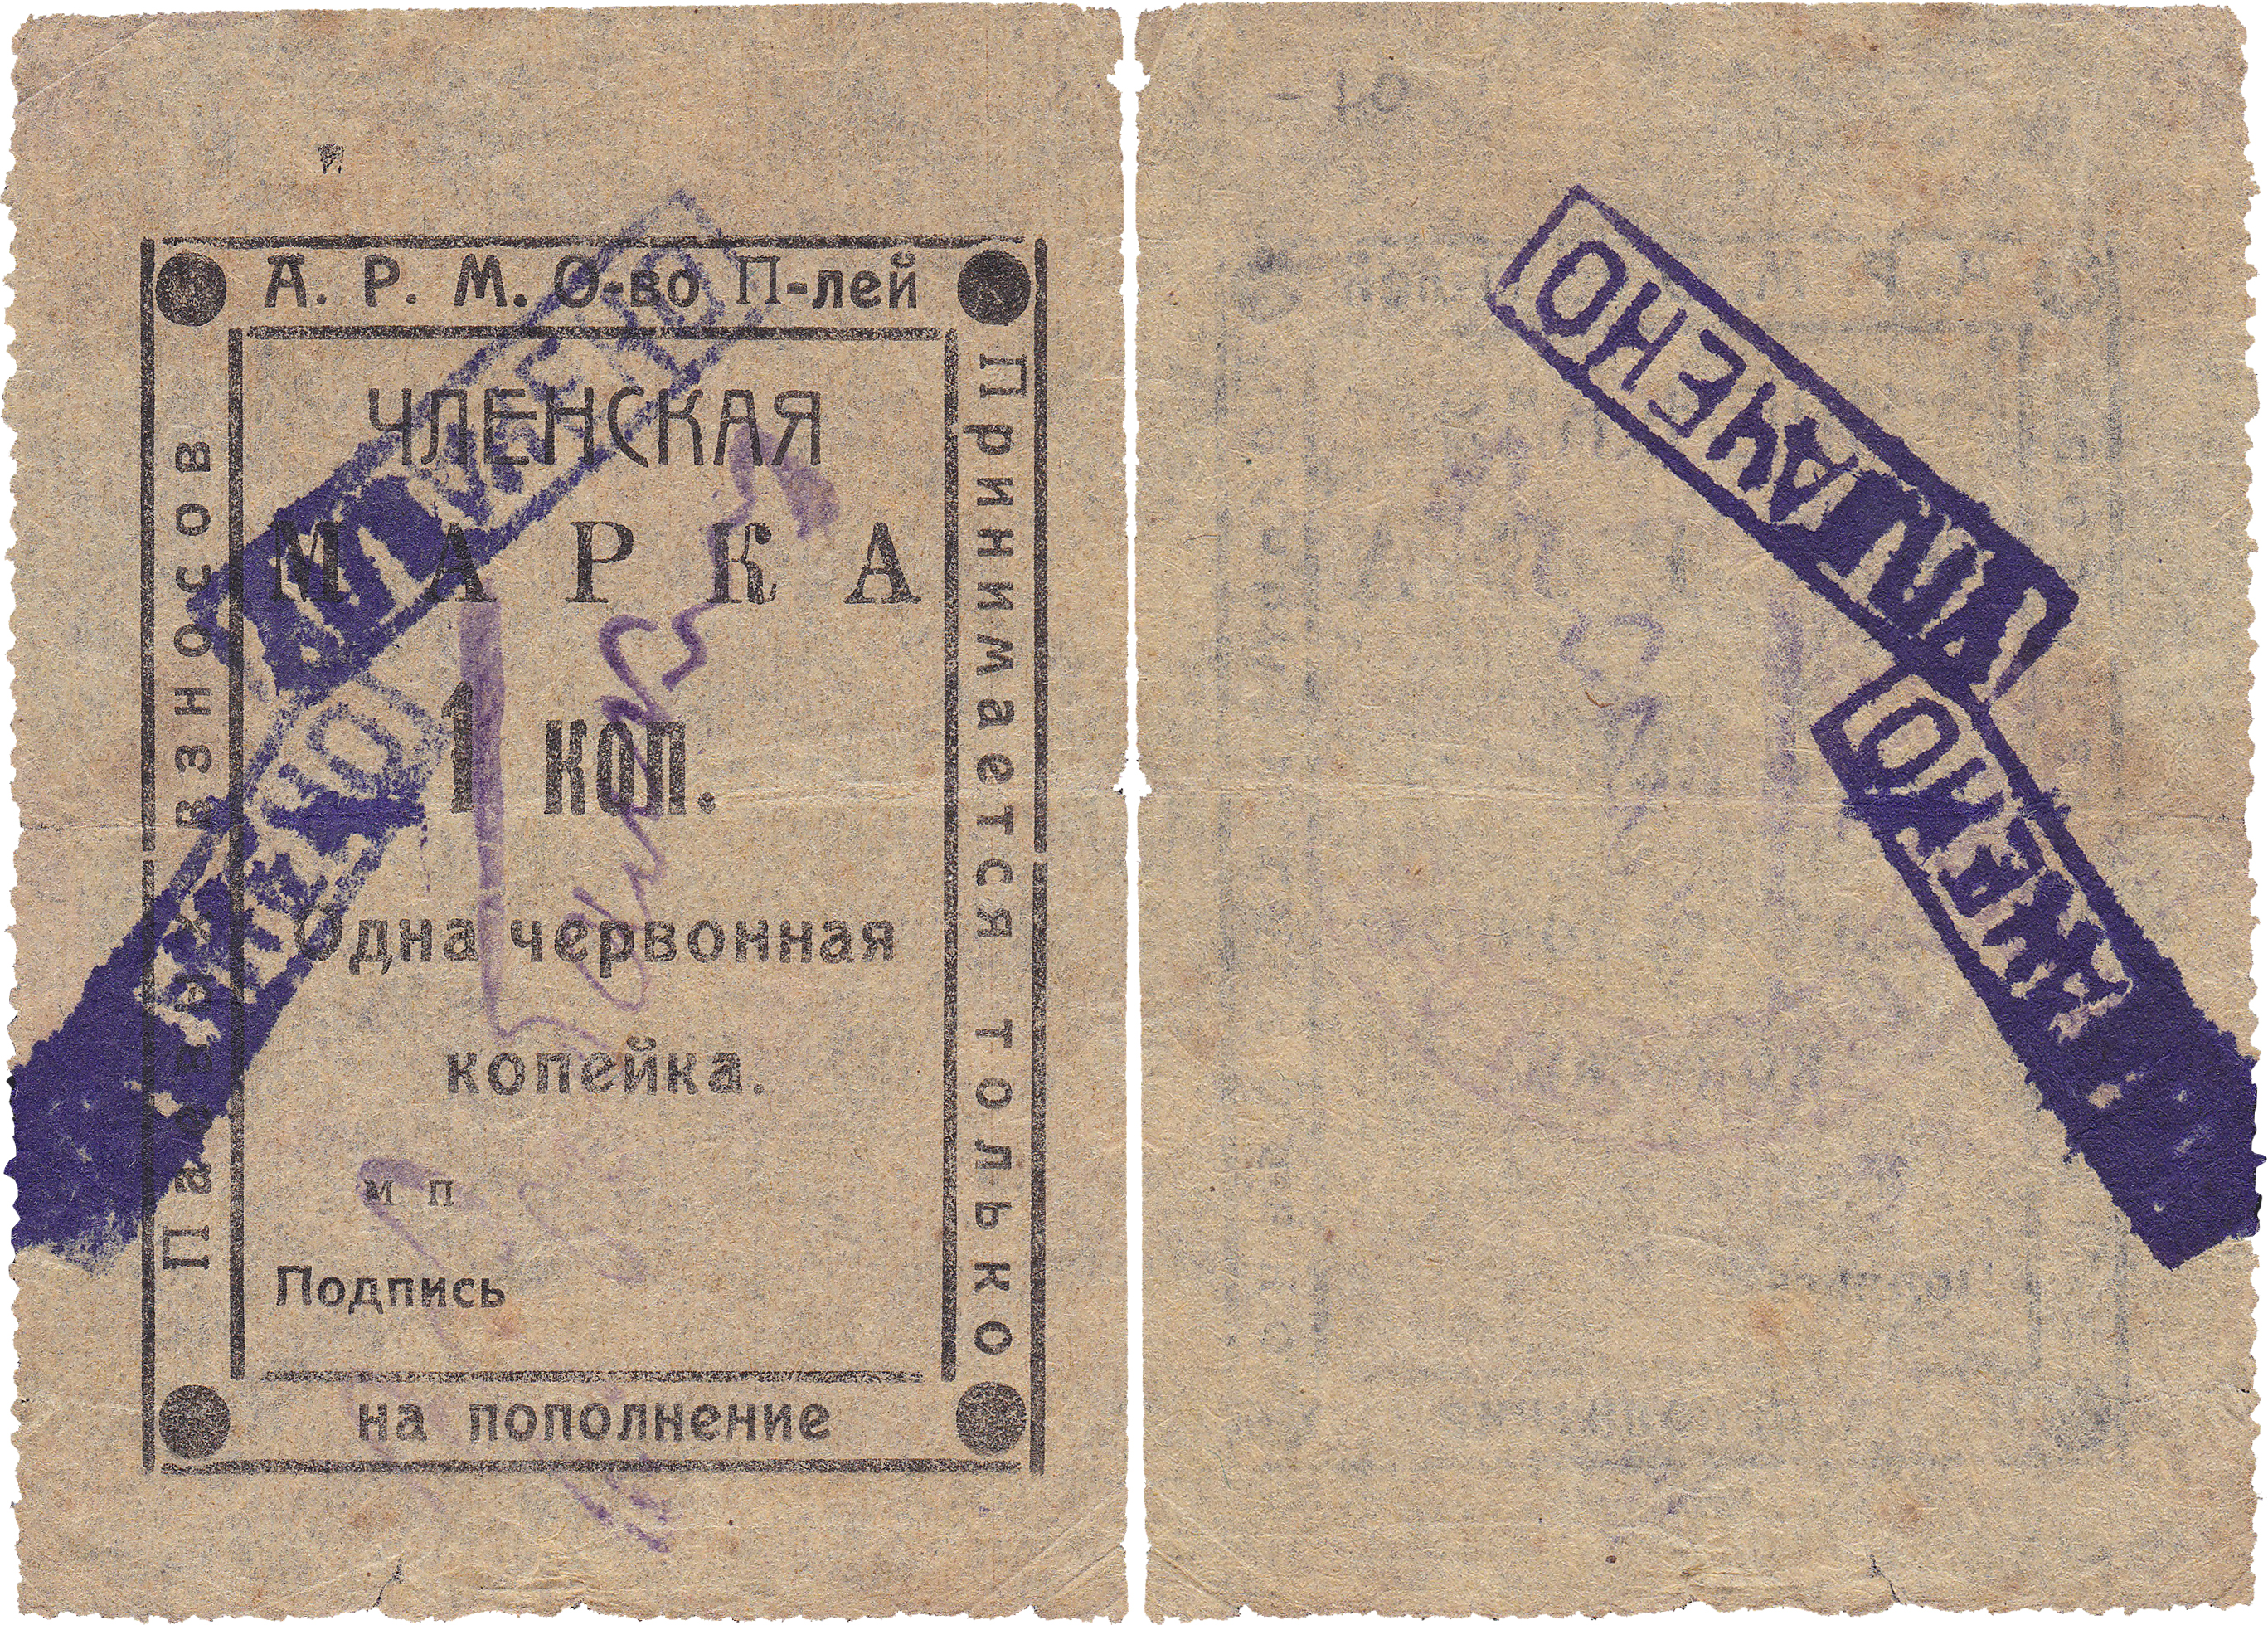 Членская марка 1 червонная Копейка 1923 год. Анапское Районное Многолавочное общество потребителей